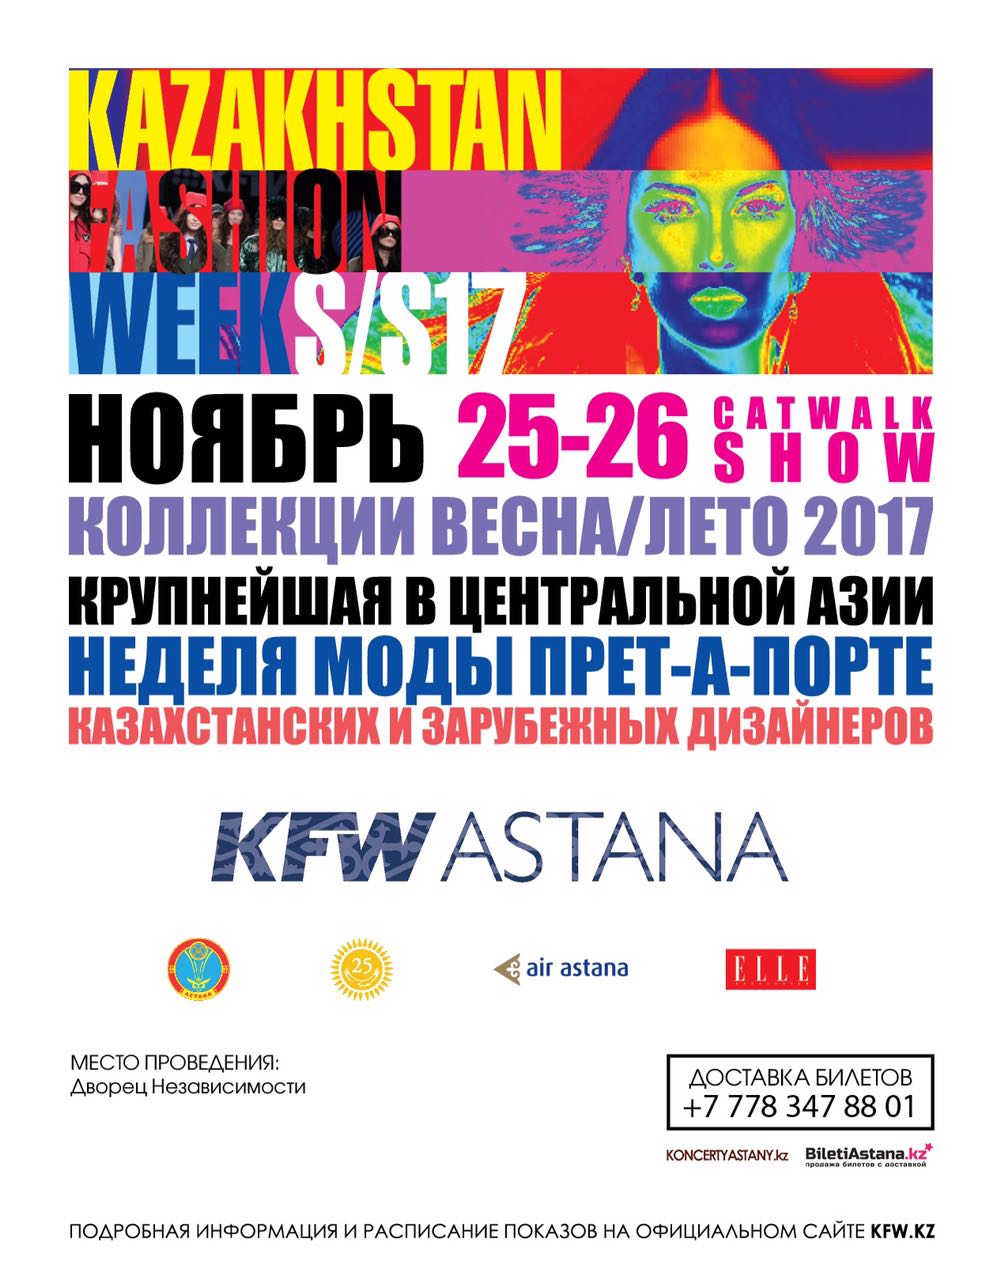 Показ Недели моды прет-а-порте "KAZAKHSTAN FASHION WEEK" весна-лето 2017